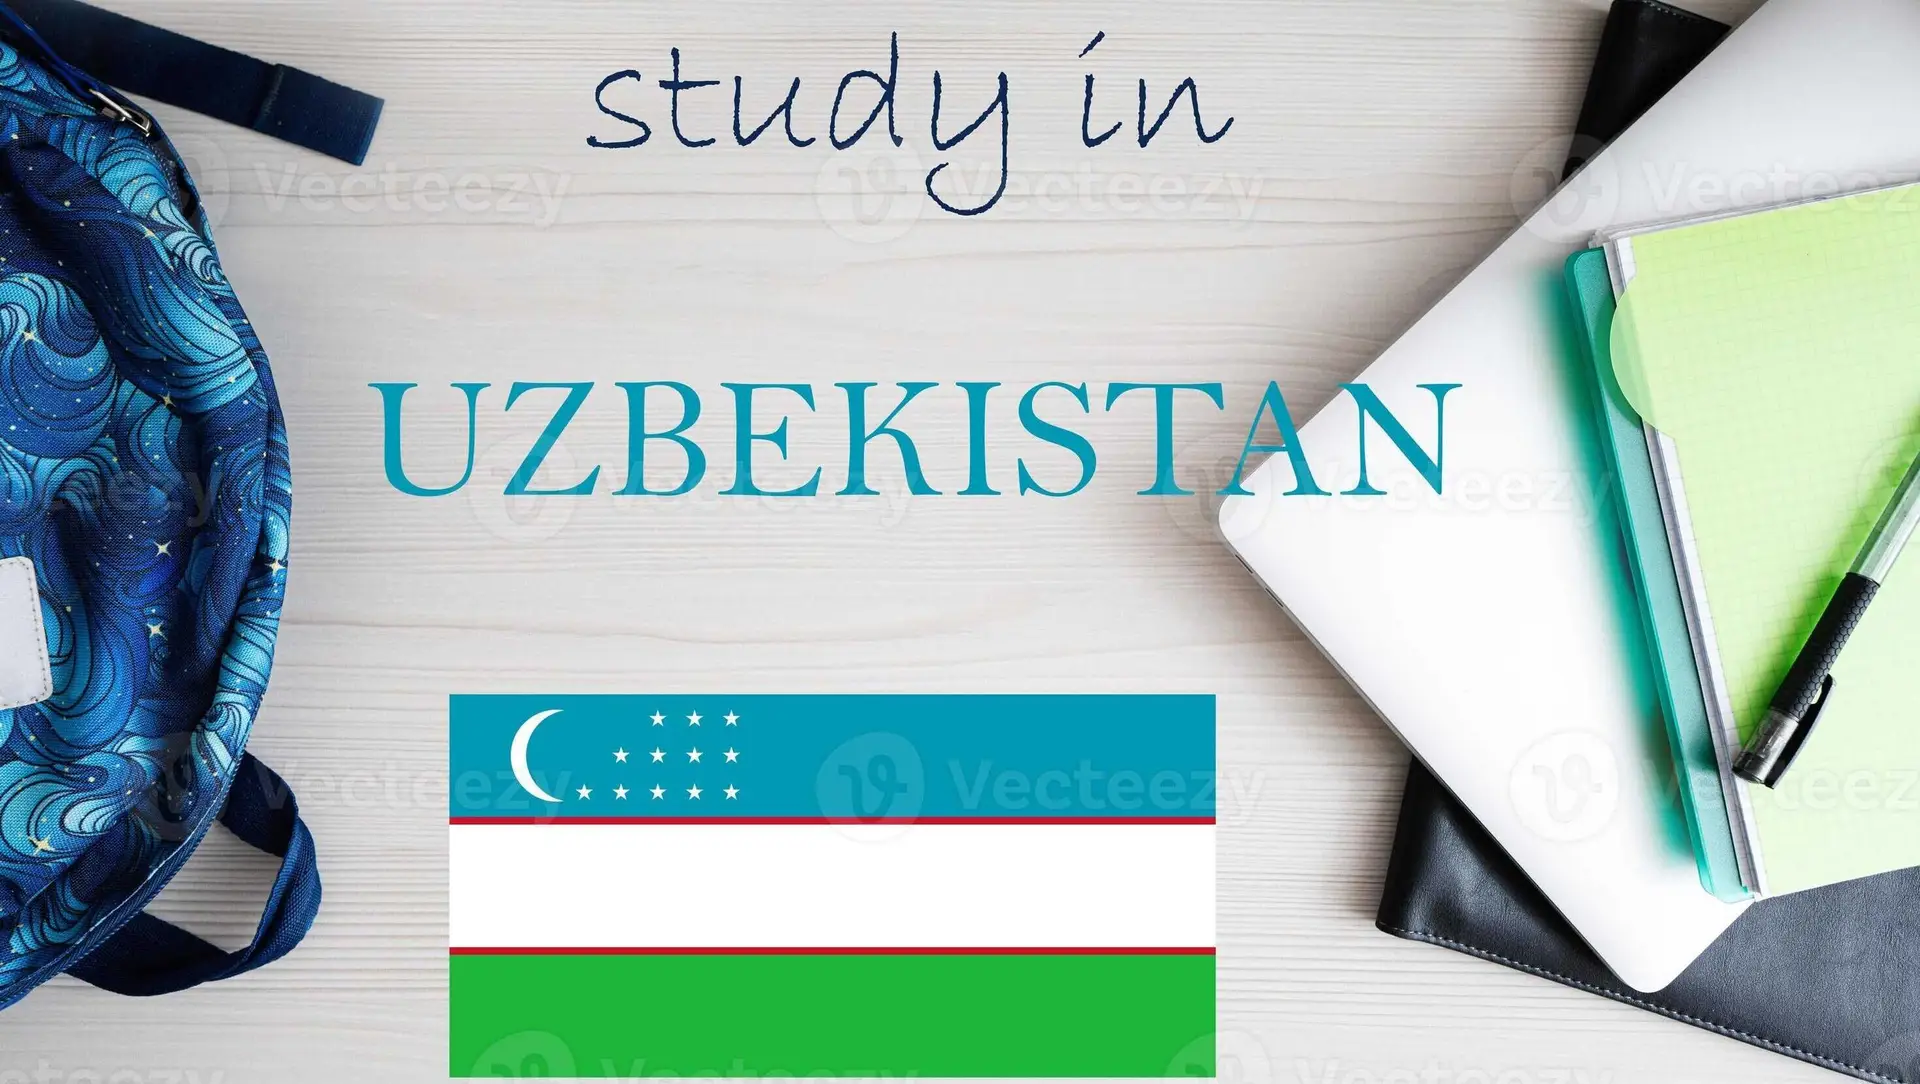 Study MBBS in uzbekistan